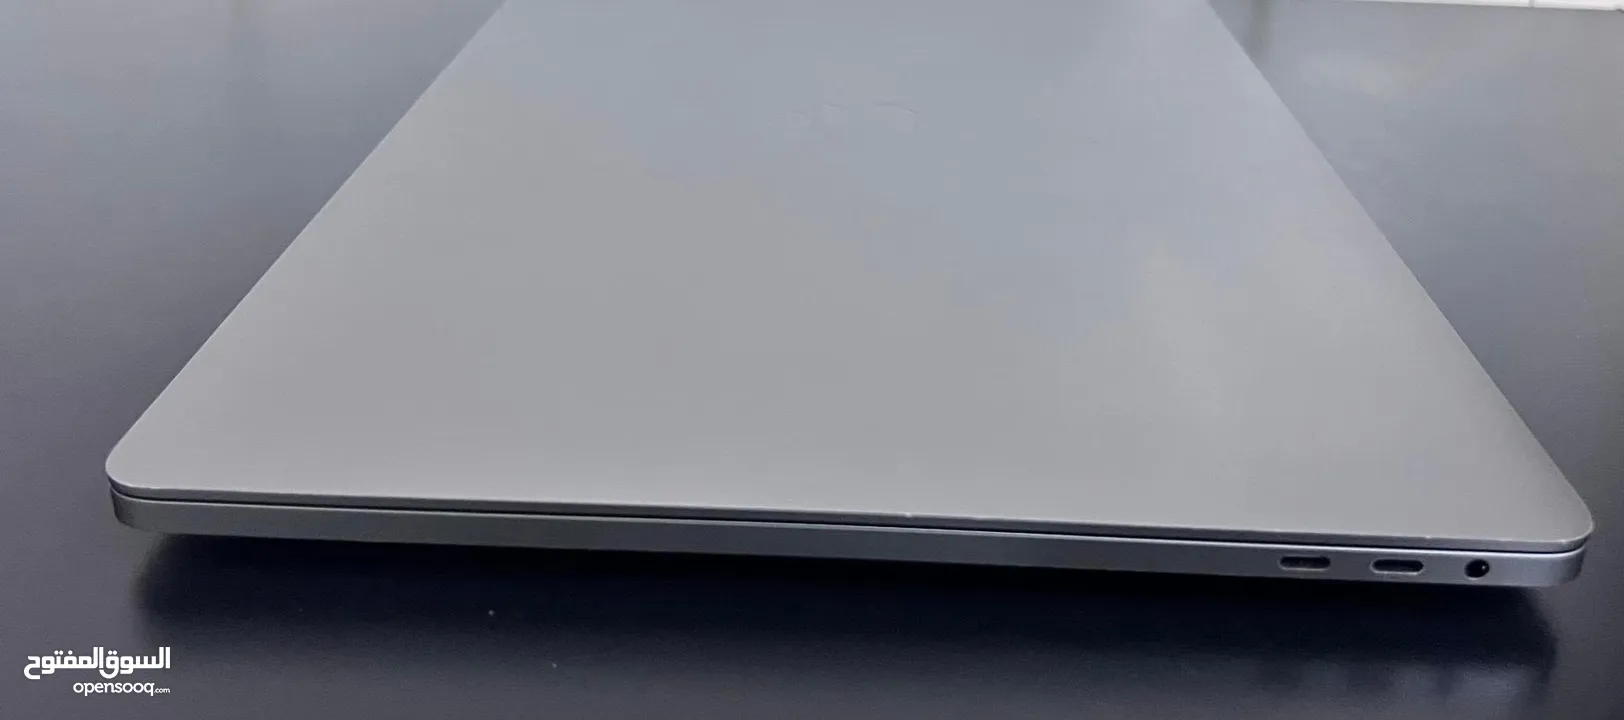 MacBook Pro 2019 16”